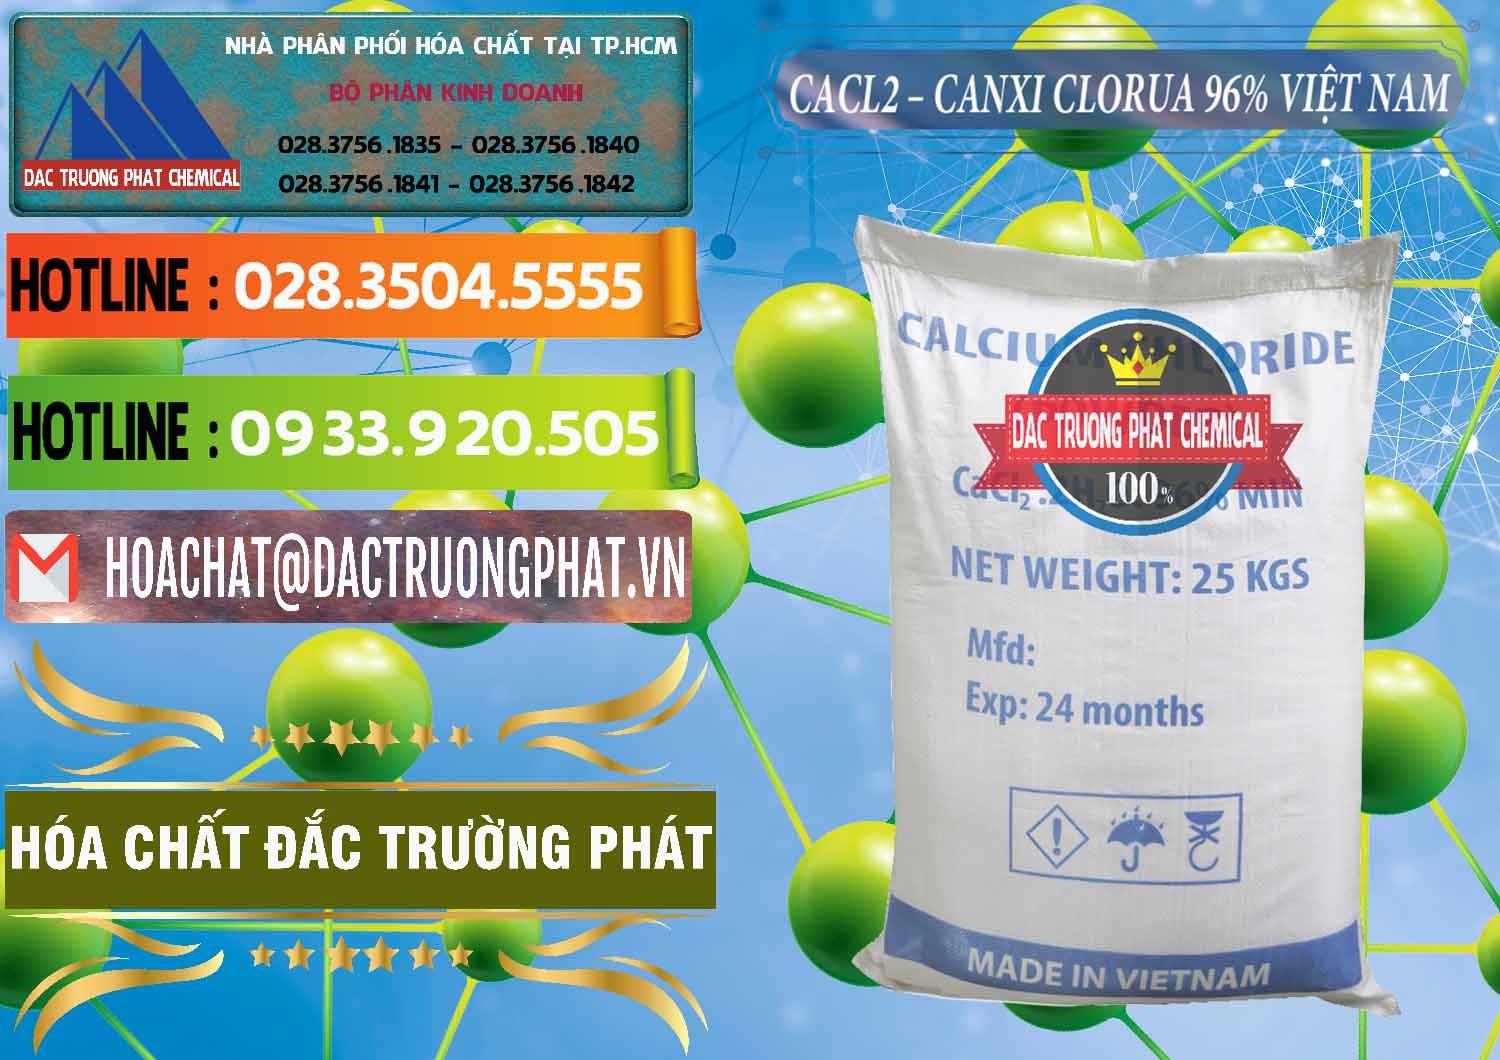 Cty bán - cung ứng CaCl2 – Canxi Clorua 96% Việt Nam - 0236 - Đơn vị cung ứng - bán hóa chất tại TP.HCM - cungcaphoachat.com.vn